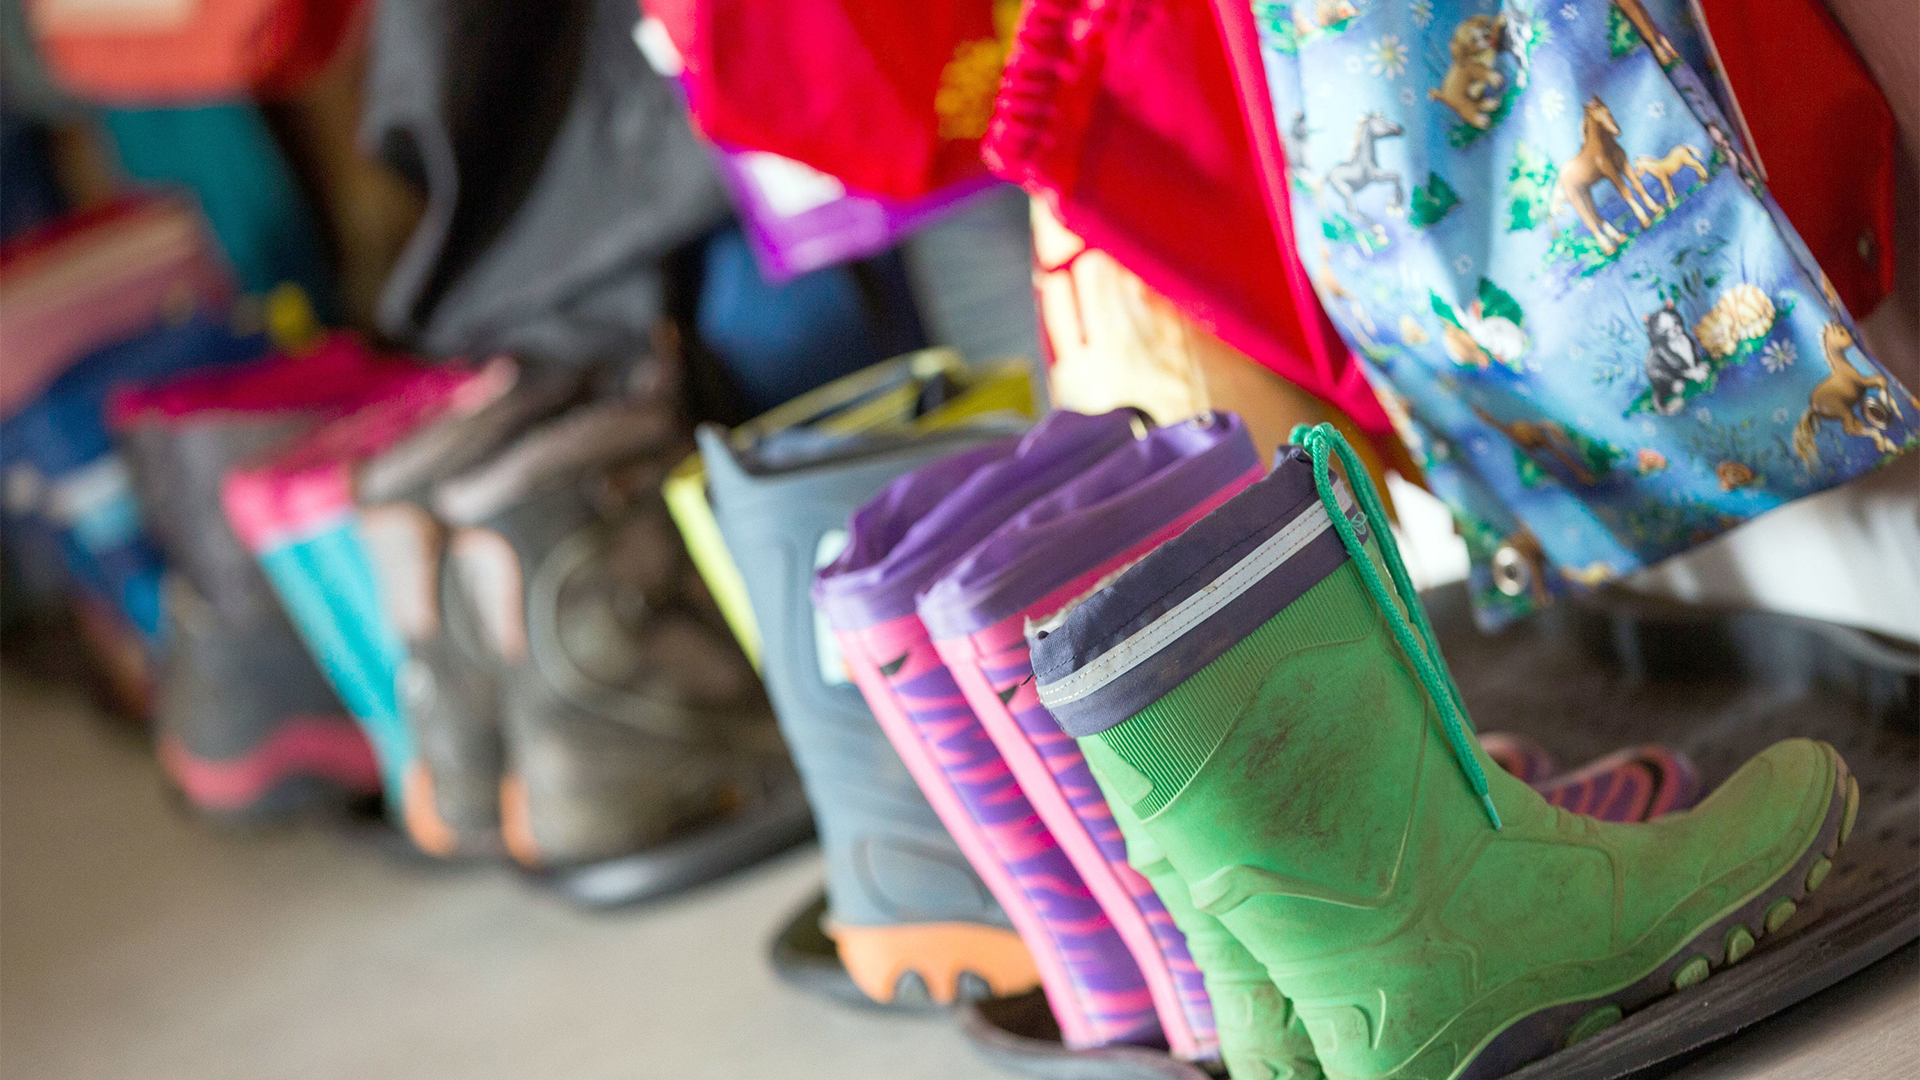 Gummistiefel für Kinder stehen in der Garderobe einer Kindertagesstätte | dpa